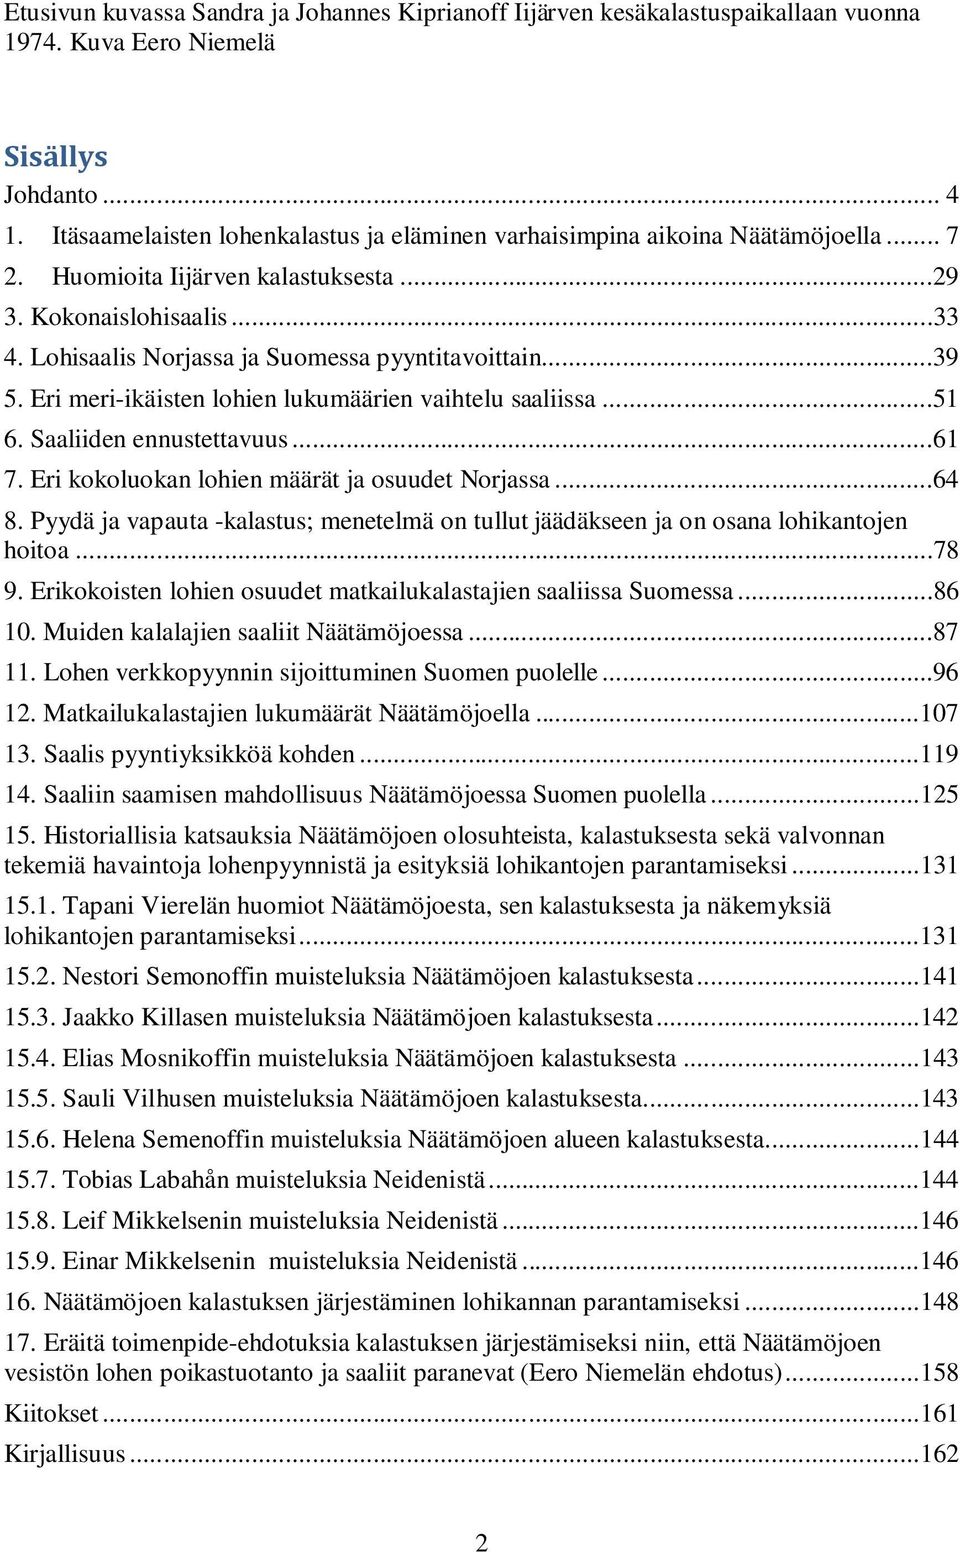 Lohisaalis Norjassa ja Suomessa pyyntitavoittain...39 5. Eri meri-ikäisten lohien lukumäärien vaihtelu saaliissa...51 6. Saaliiden ennustettavuus...61 7.